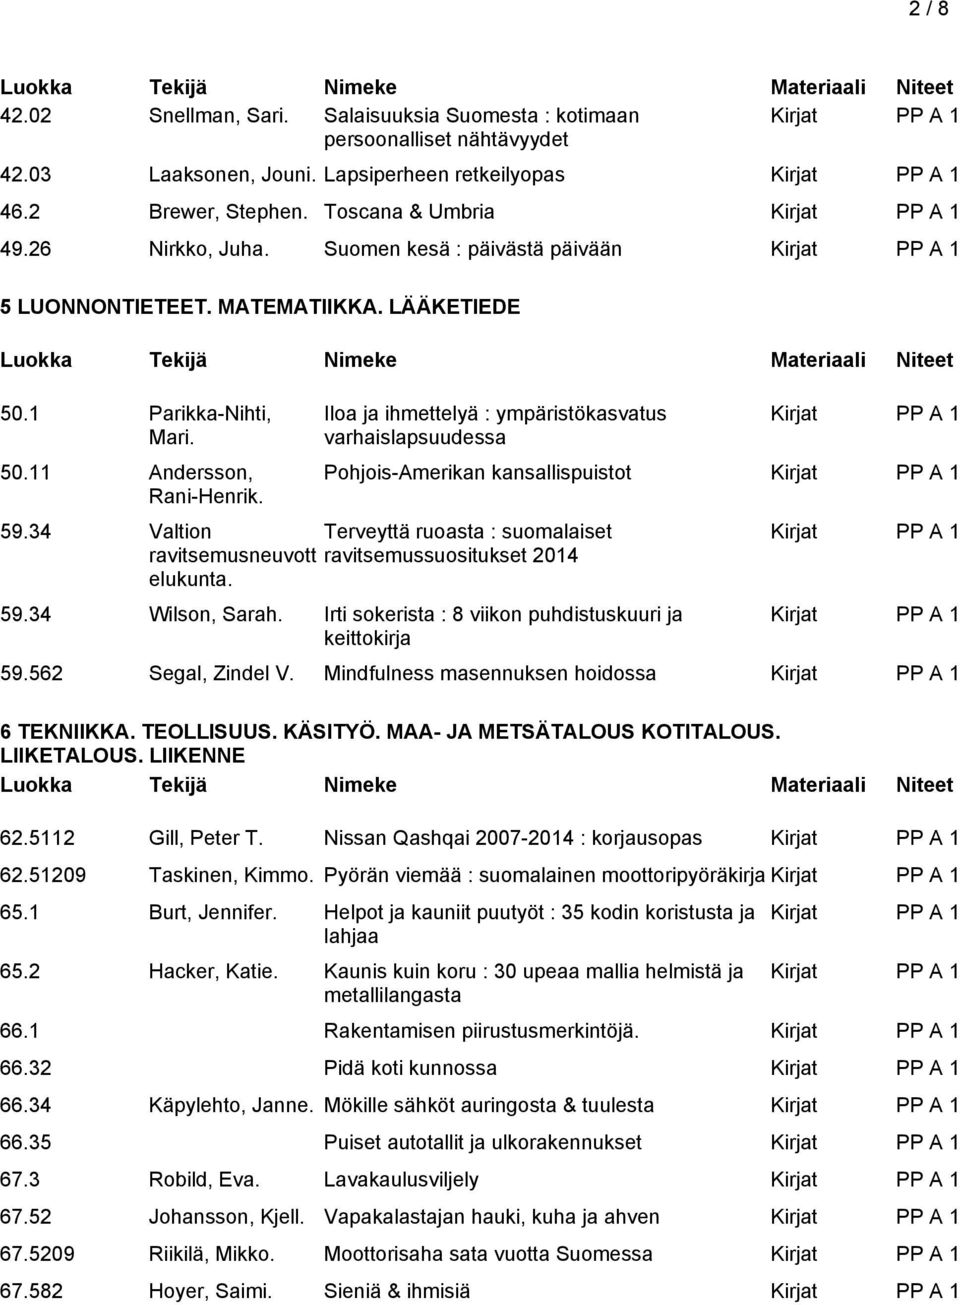 34 Valtion Terveyttä ruoasta : suomalaiset ravitsemusneuvott ravitsemussuositukset 2014 elukunta. Pohjois-Amerikan kansallispuistot 59.34 Wilson, Sarah.